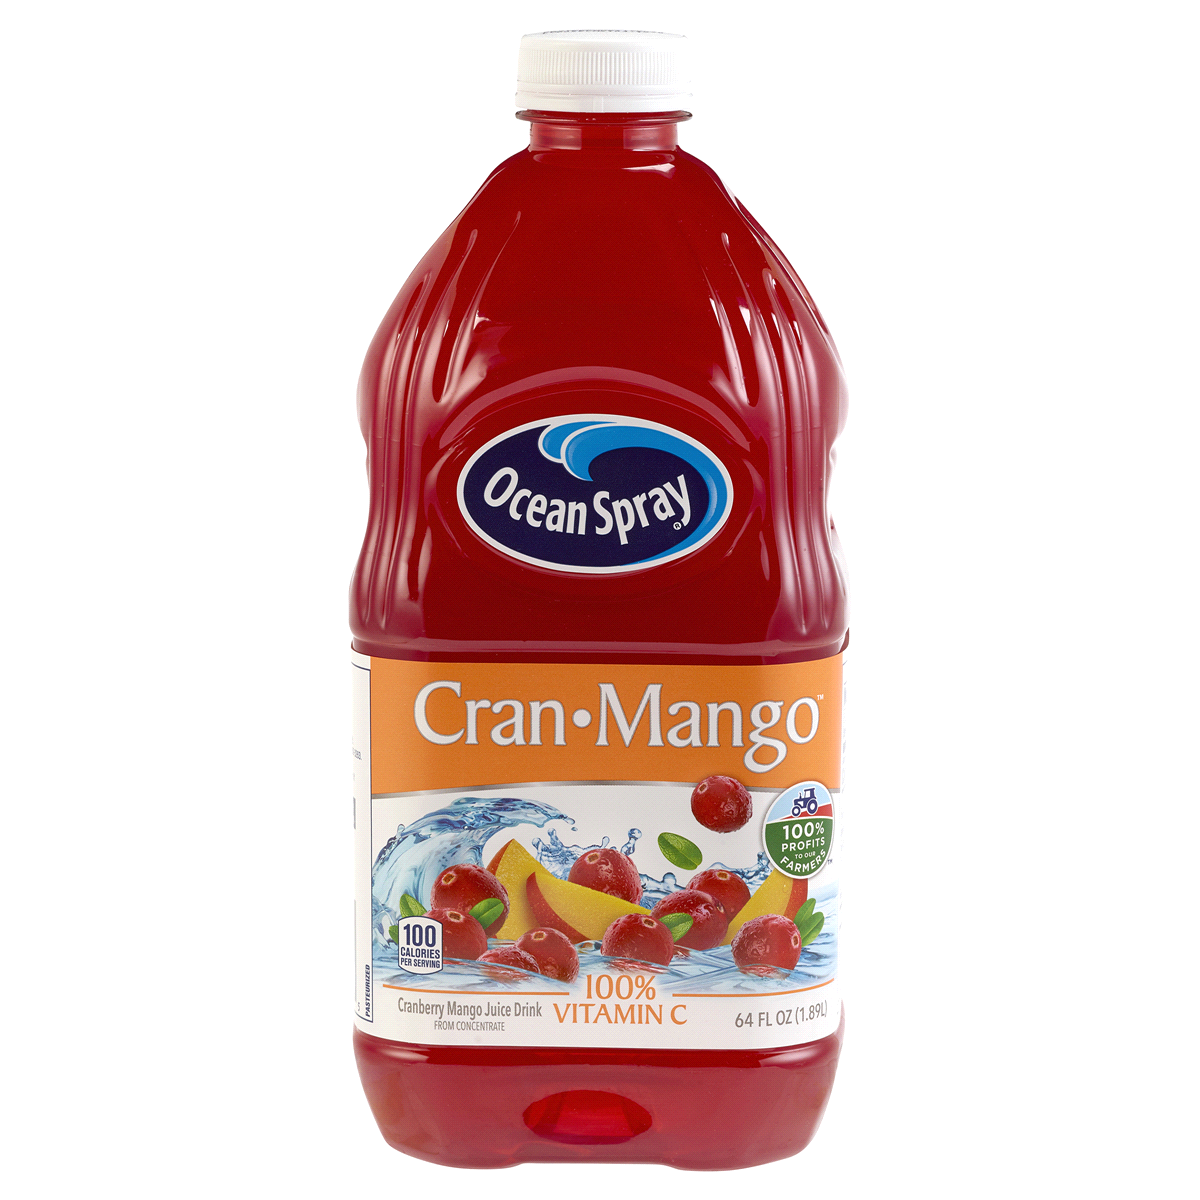 Oceanspray Cran-Mango 64oz